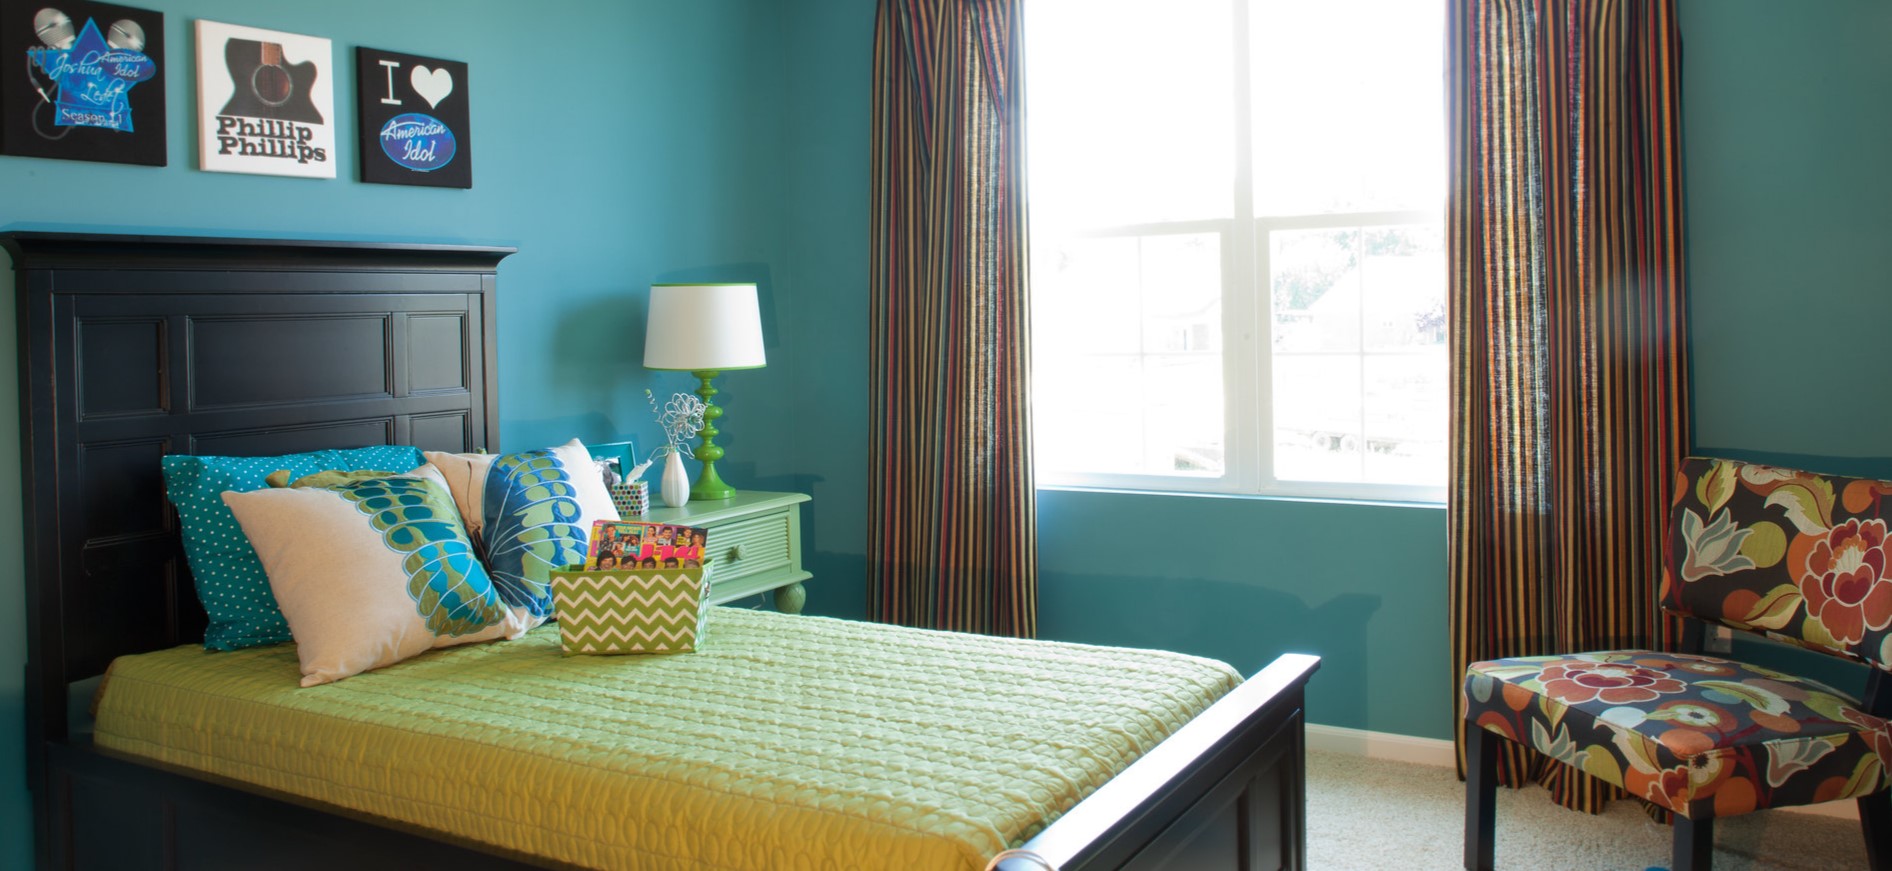 Уютная комната в голубом цвете